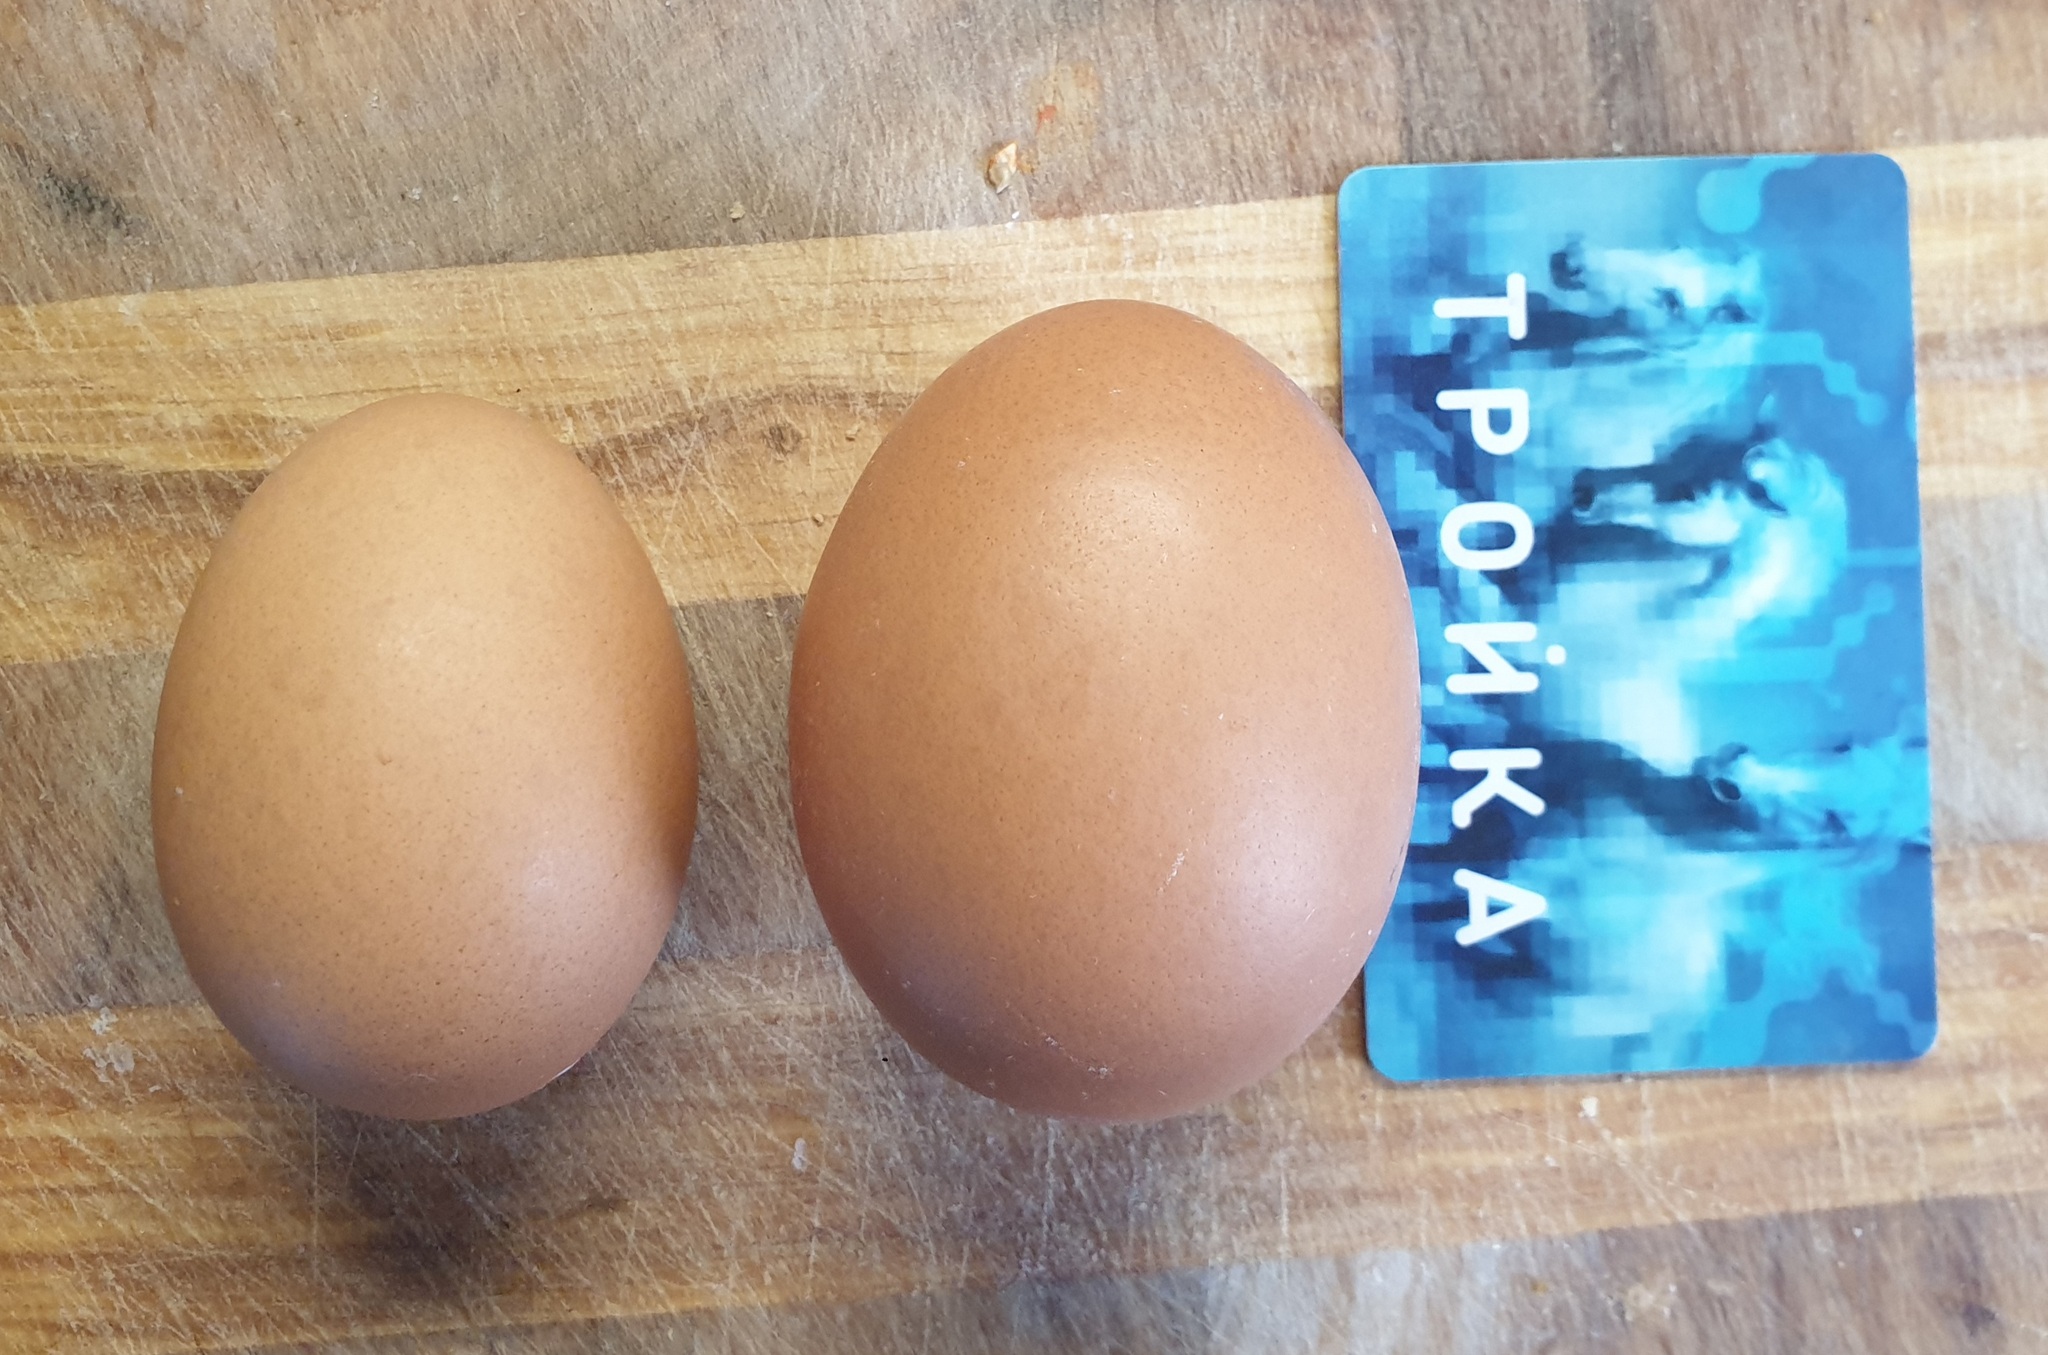 Категория яиц св. Большие и натуральные яйца. Большие яйца с0. У нас крепкие яйца.